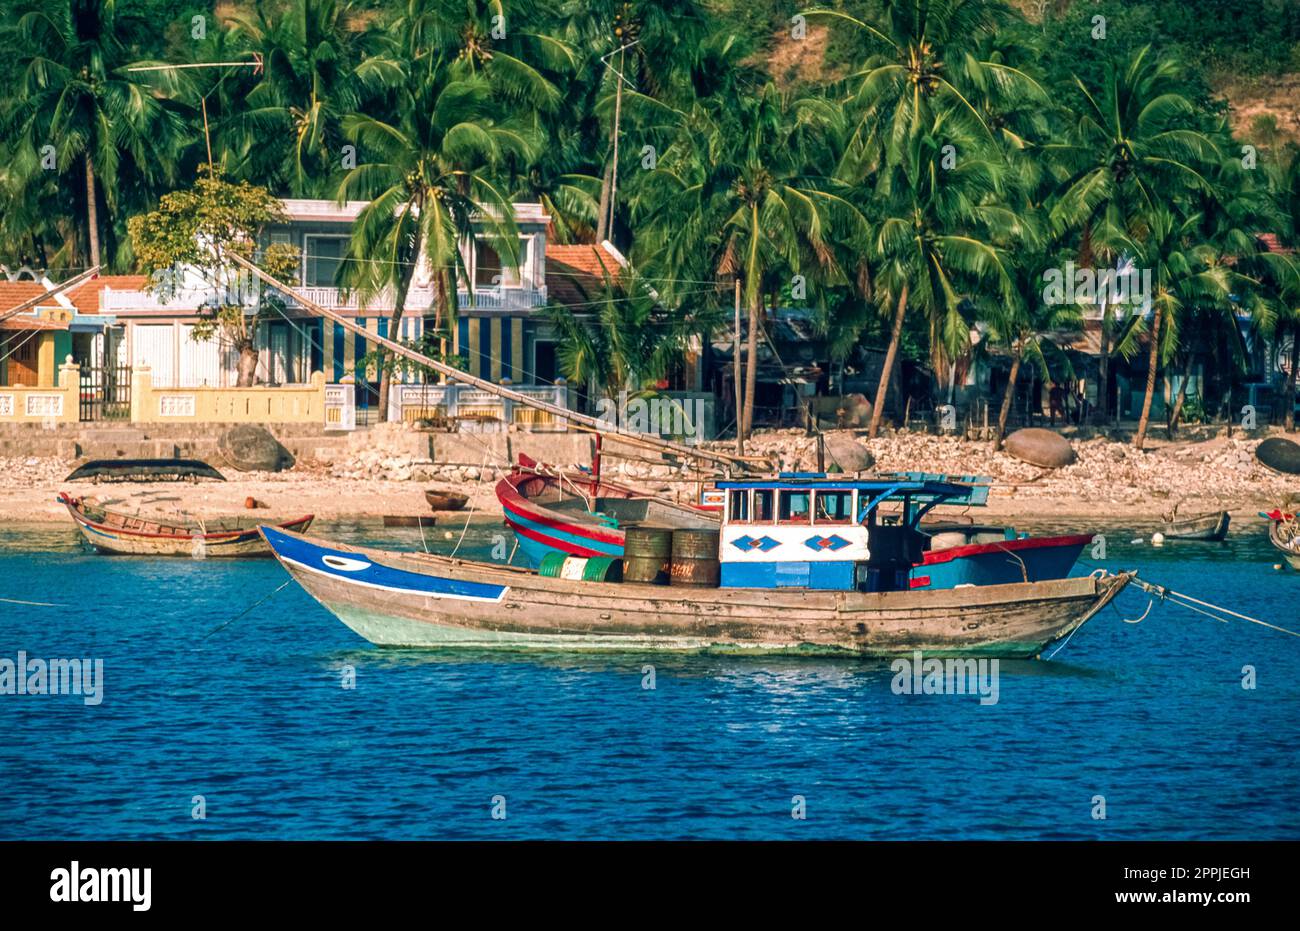 Gescannte Folie mit historischem Farbfoto der Küstenregion Vietnams am Chinesischen Meer Stockfoto